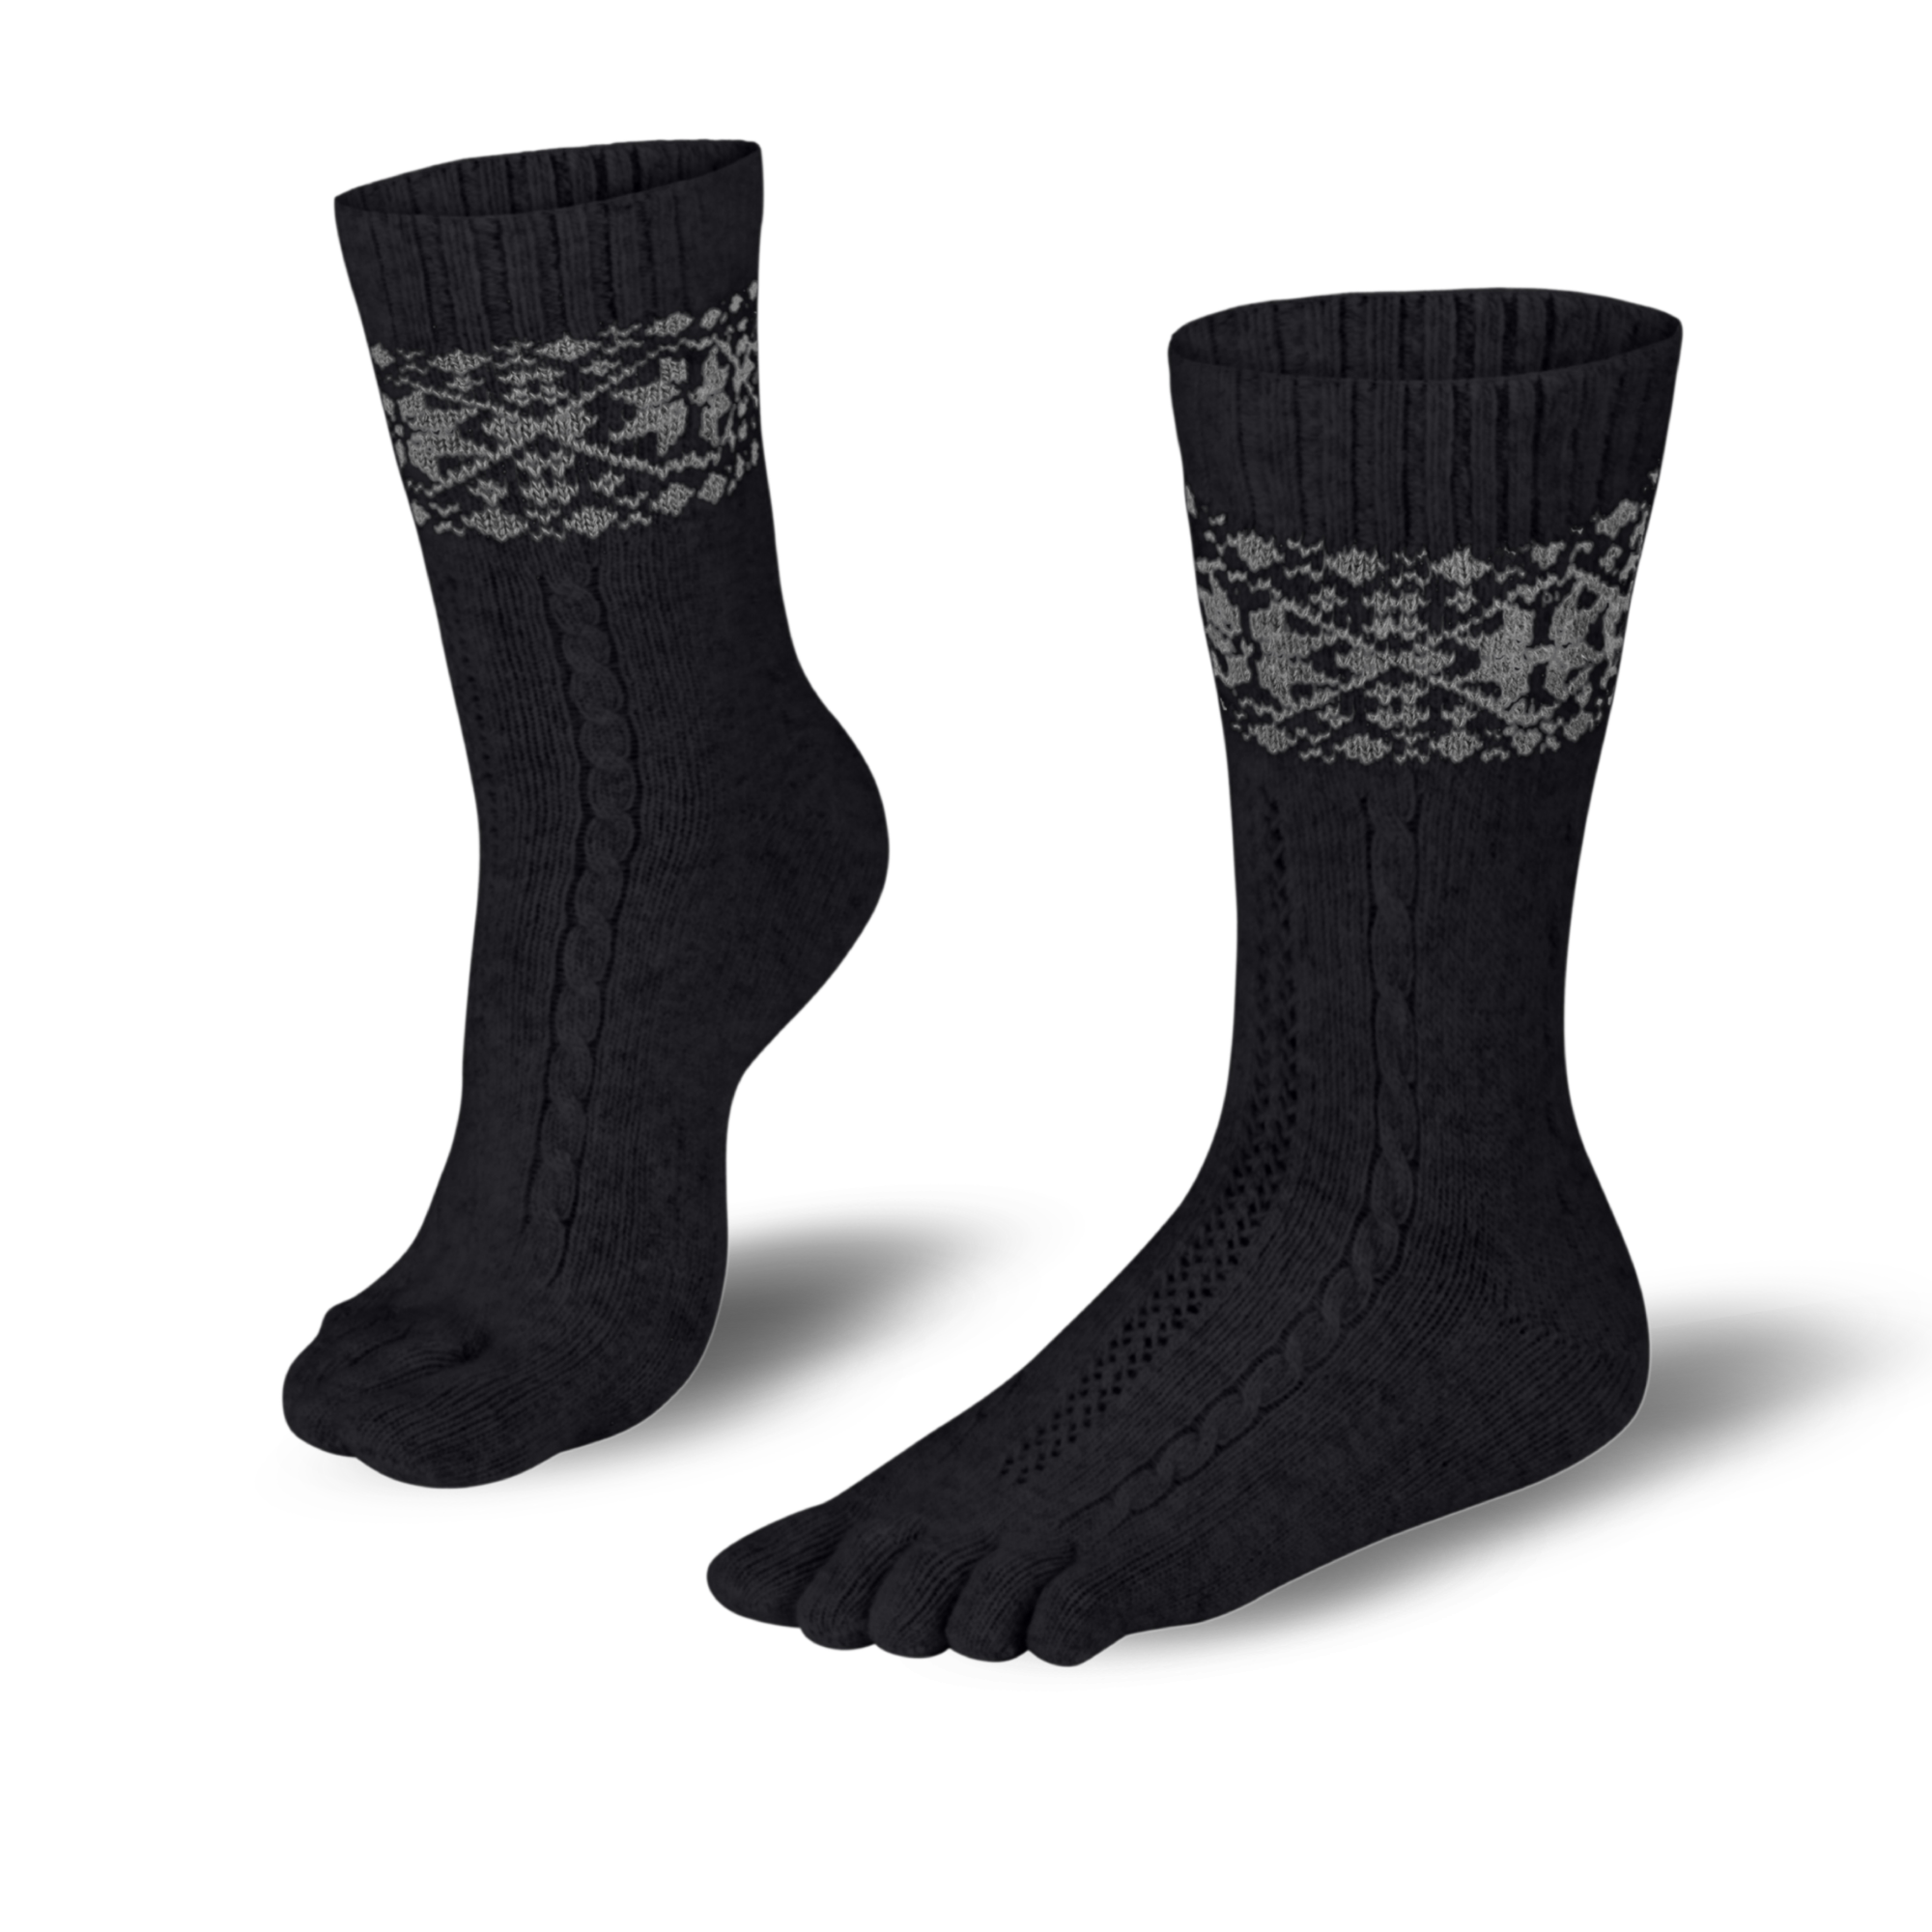  Knitido warme Zehensocken aus Merino & Kaschmir mit Schneeflecken Muster in schwarz /grau